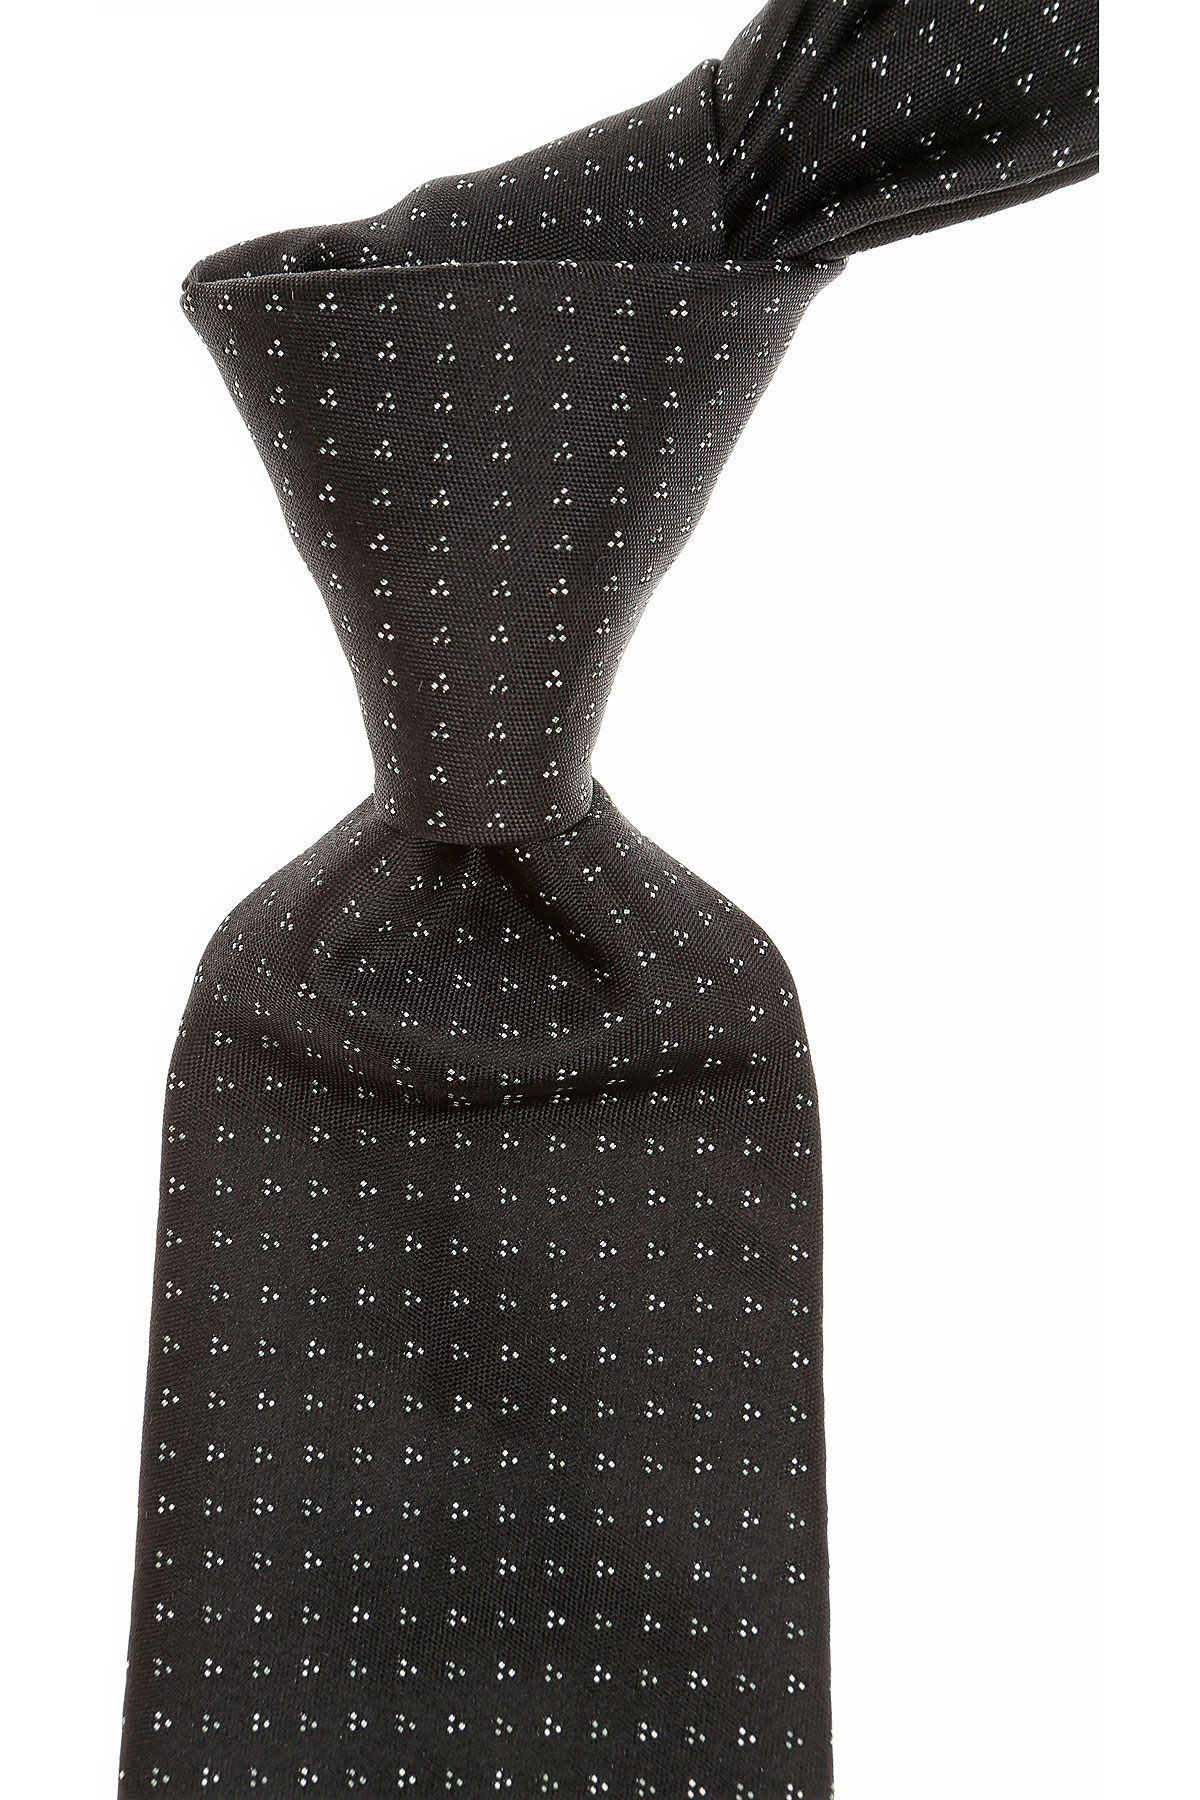 Cravates Christian Dior , Noir, Soie, 2017